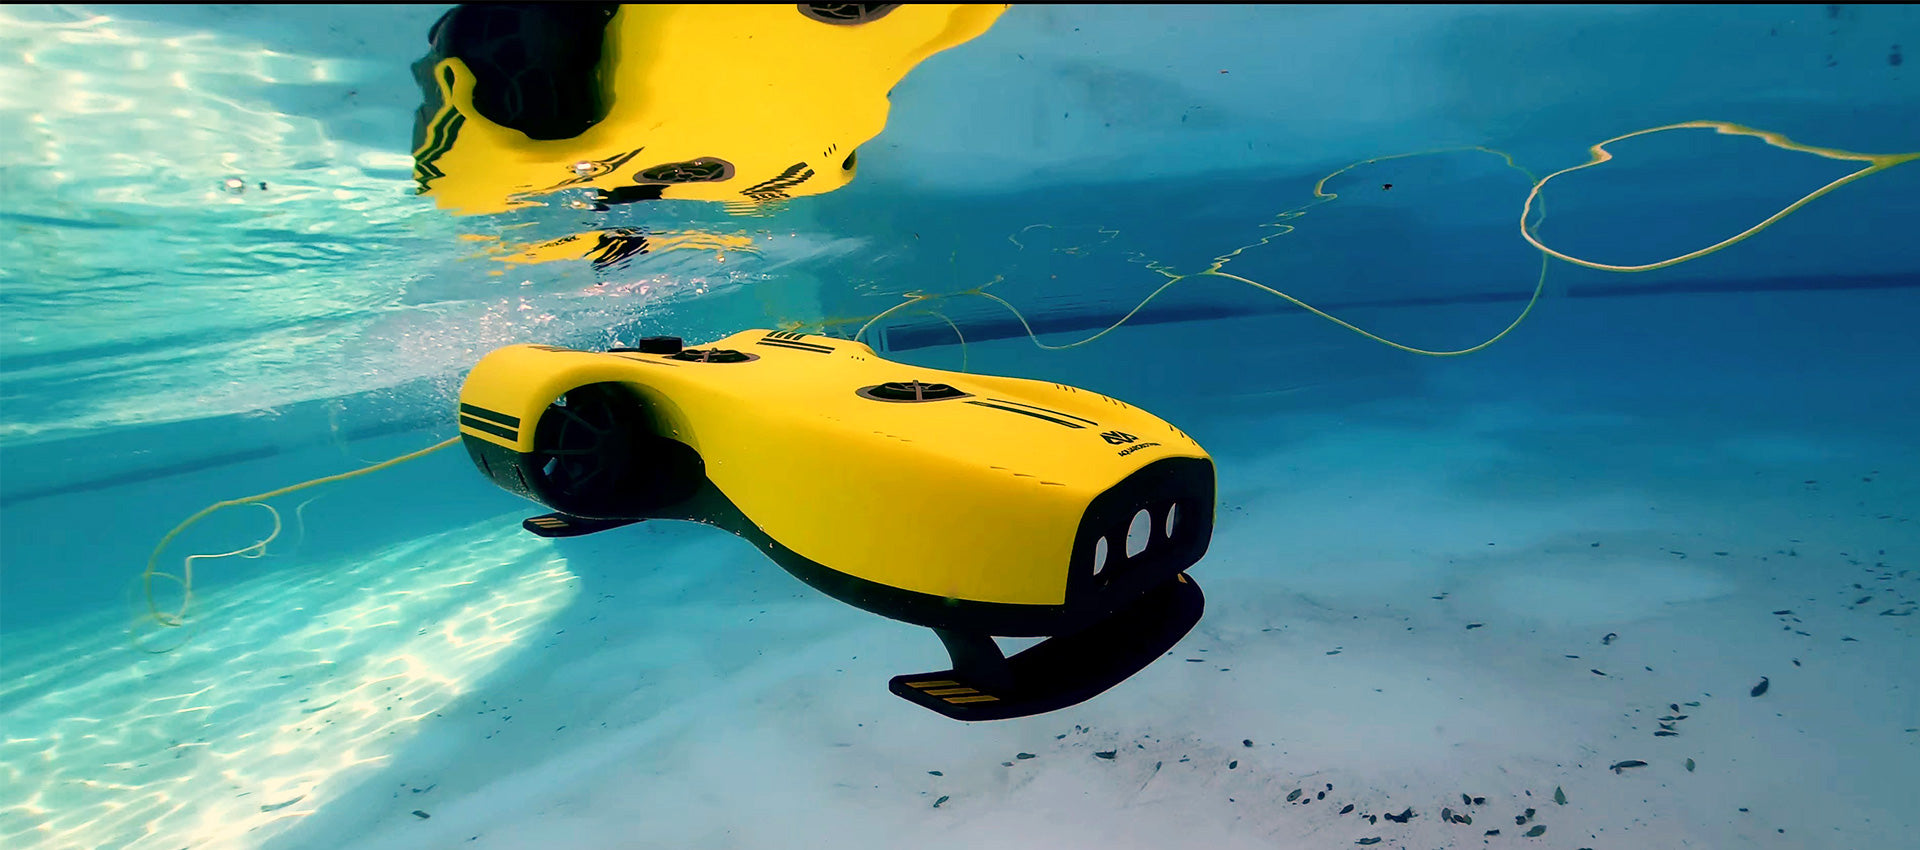 Aquarobotman nemo underwater drones can – Store